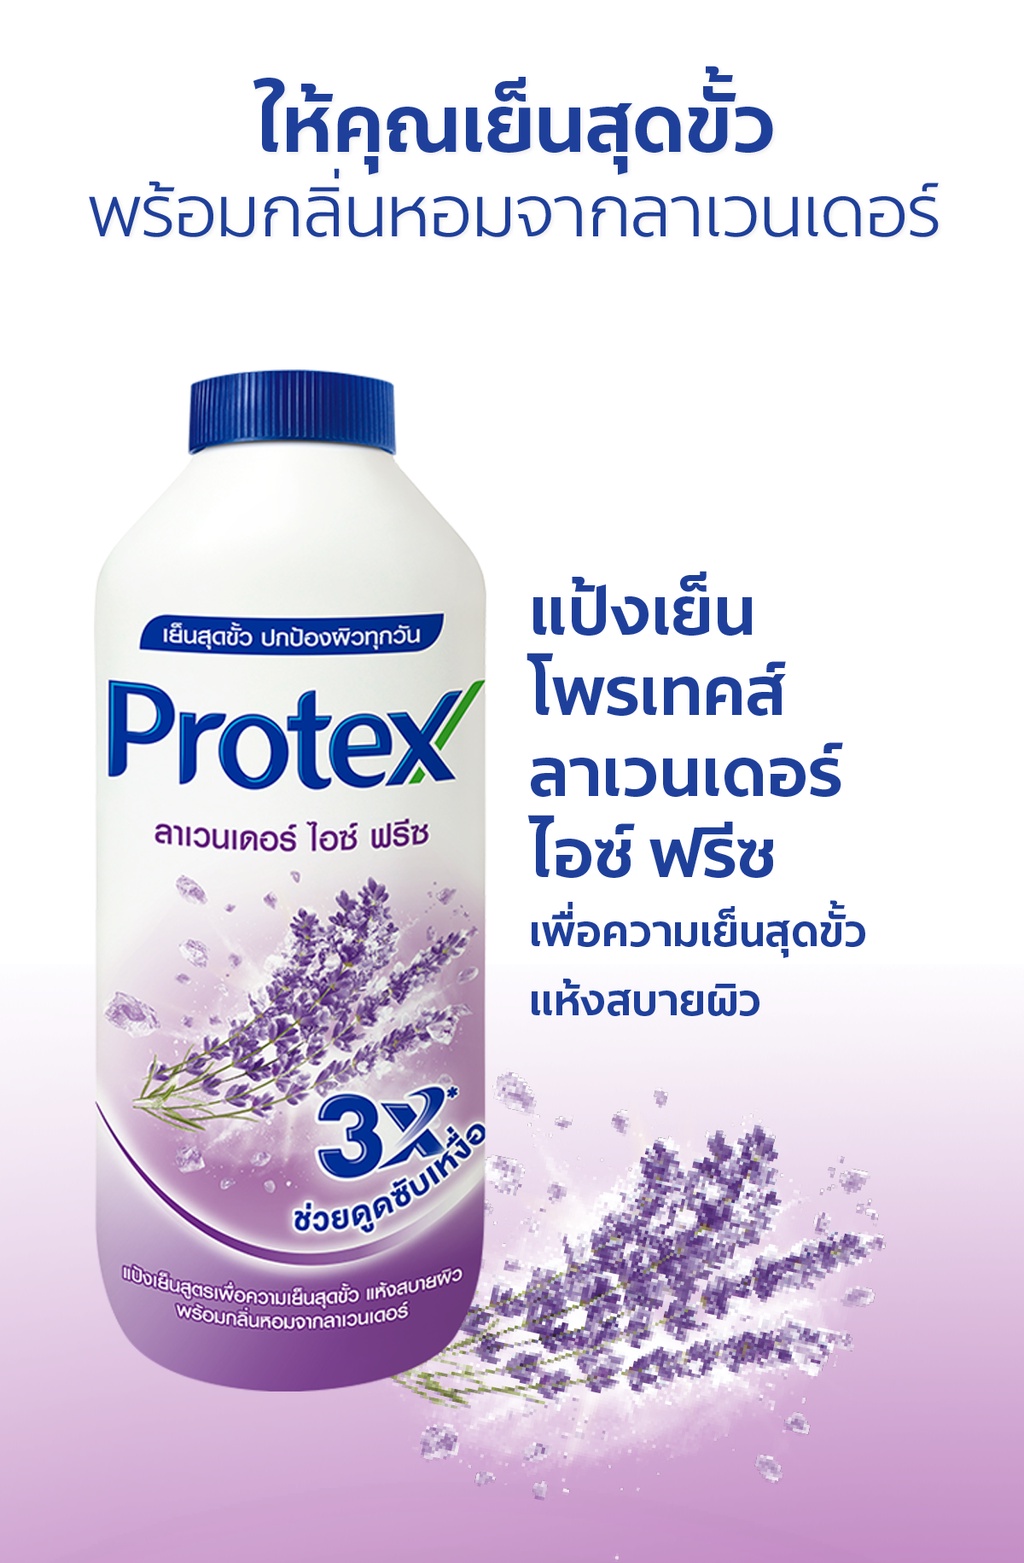 ภาพอธิบายเพิ่มเติมของ Protex โพรเทคส์ ลาเวนเดอร์ ไอซ์ ฟรีซ 280 กรัม พร้อมกลิ่นหอมจากลาเวนเดอร์ (แป้งเย็น) PROTEX Talcum Lavender Ice Freeze 140g